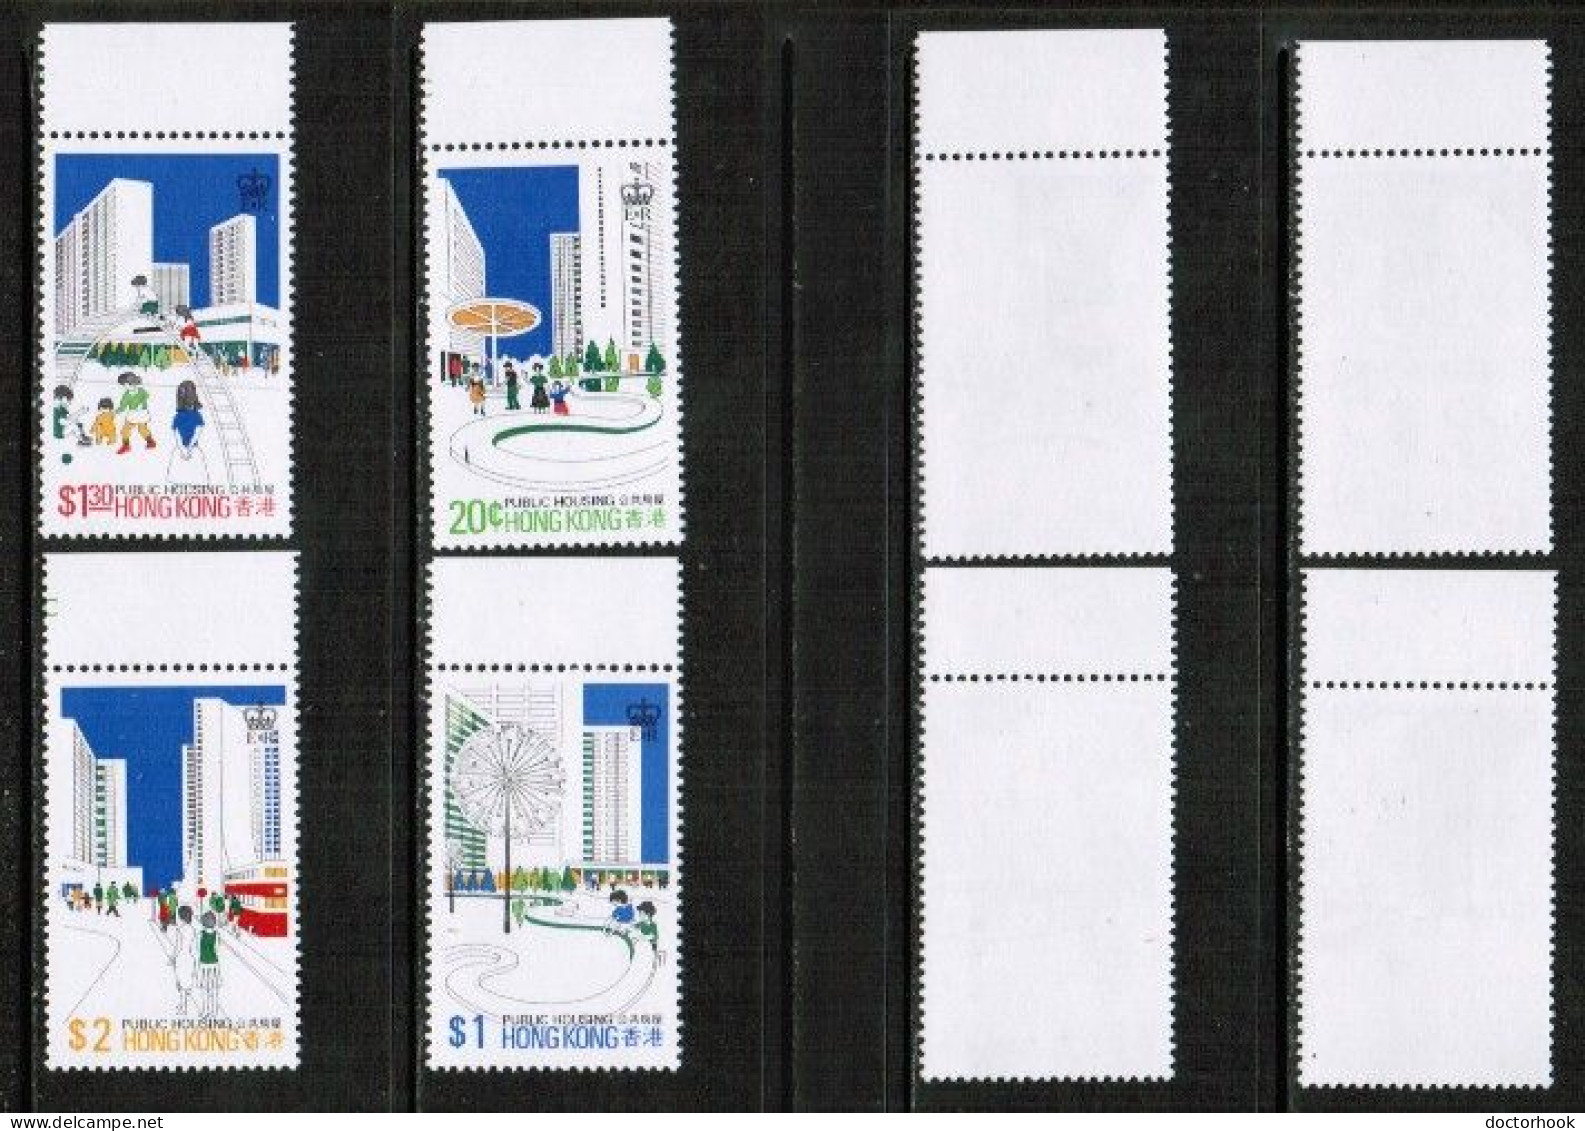 HONG KONG   Scott # 376-9** MINT NH (CONDITION AS PER SCAN) (Stamp Scan # 944-5) - Ongebruikt